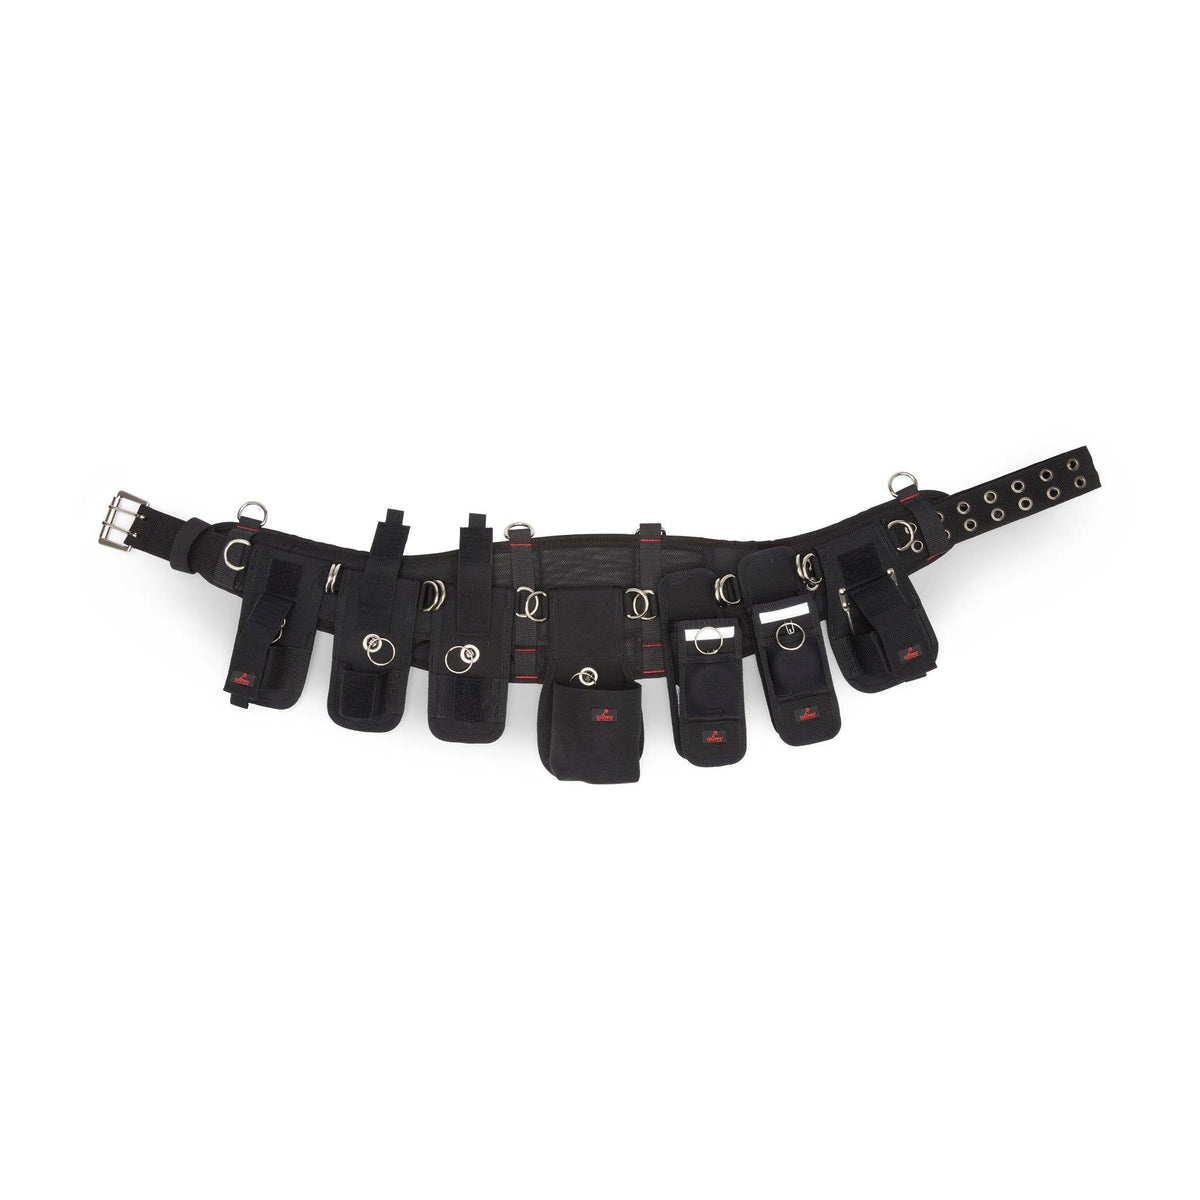 Kit de cinturón para andamios - 7 herramientas retráctiles con kits de conectores de herramientas